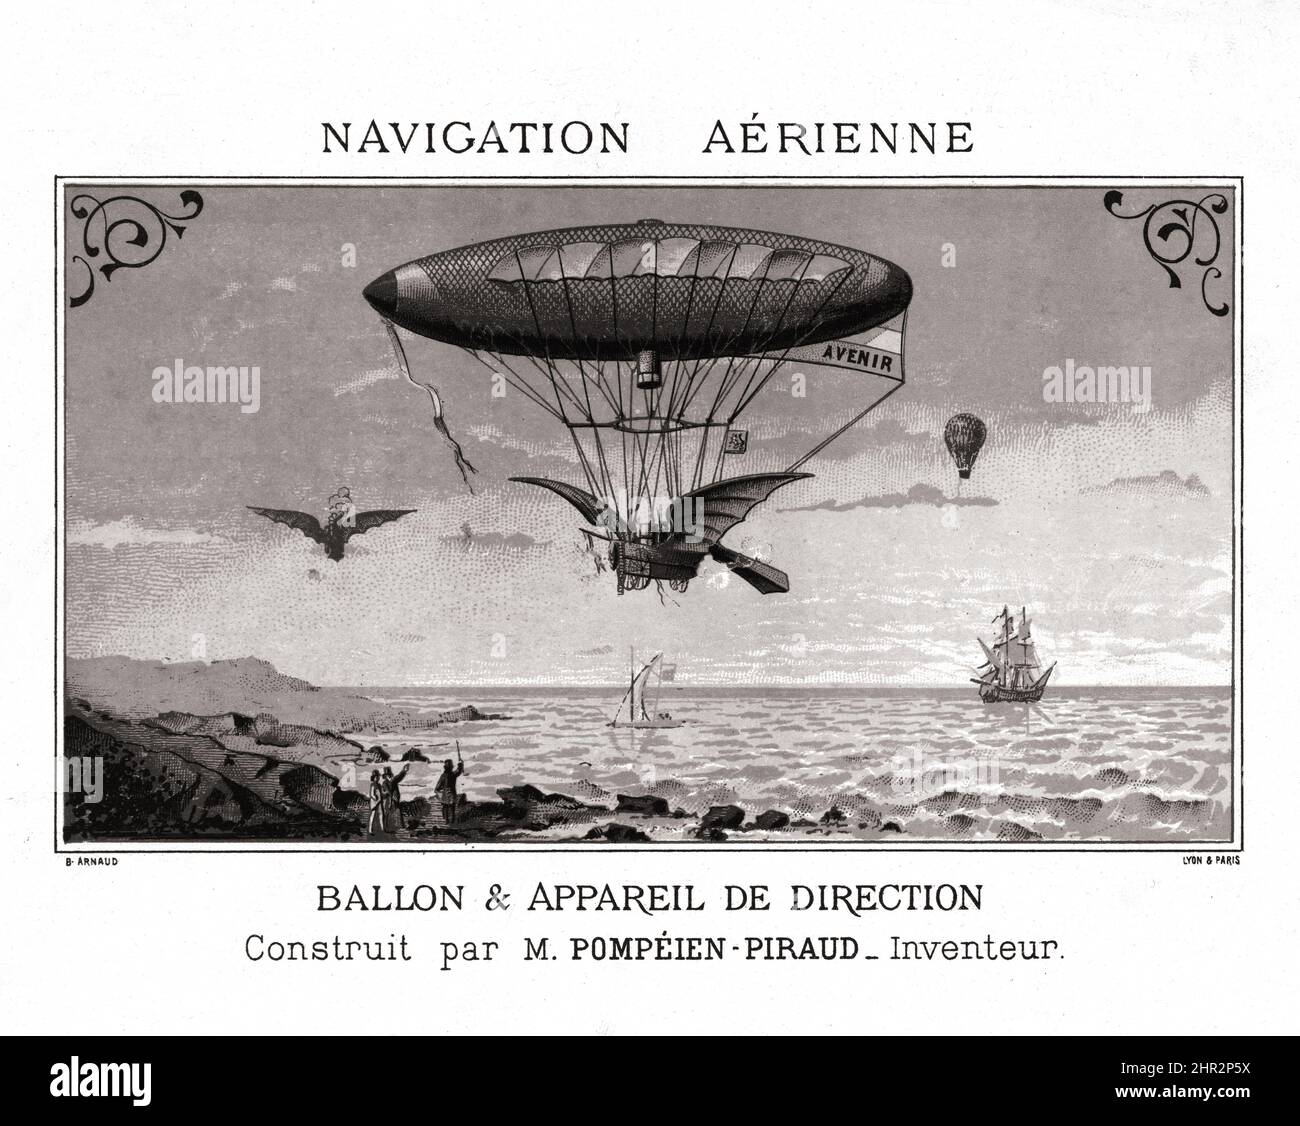 Navigation aérienne. Ballon & appareil de direction construit par M. Pompéien-Piraud, inventeur. Created / Published in Lyon, Paris by B. Arnaud. 1883 Stock Photo